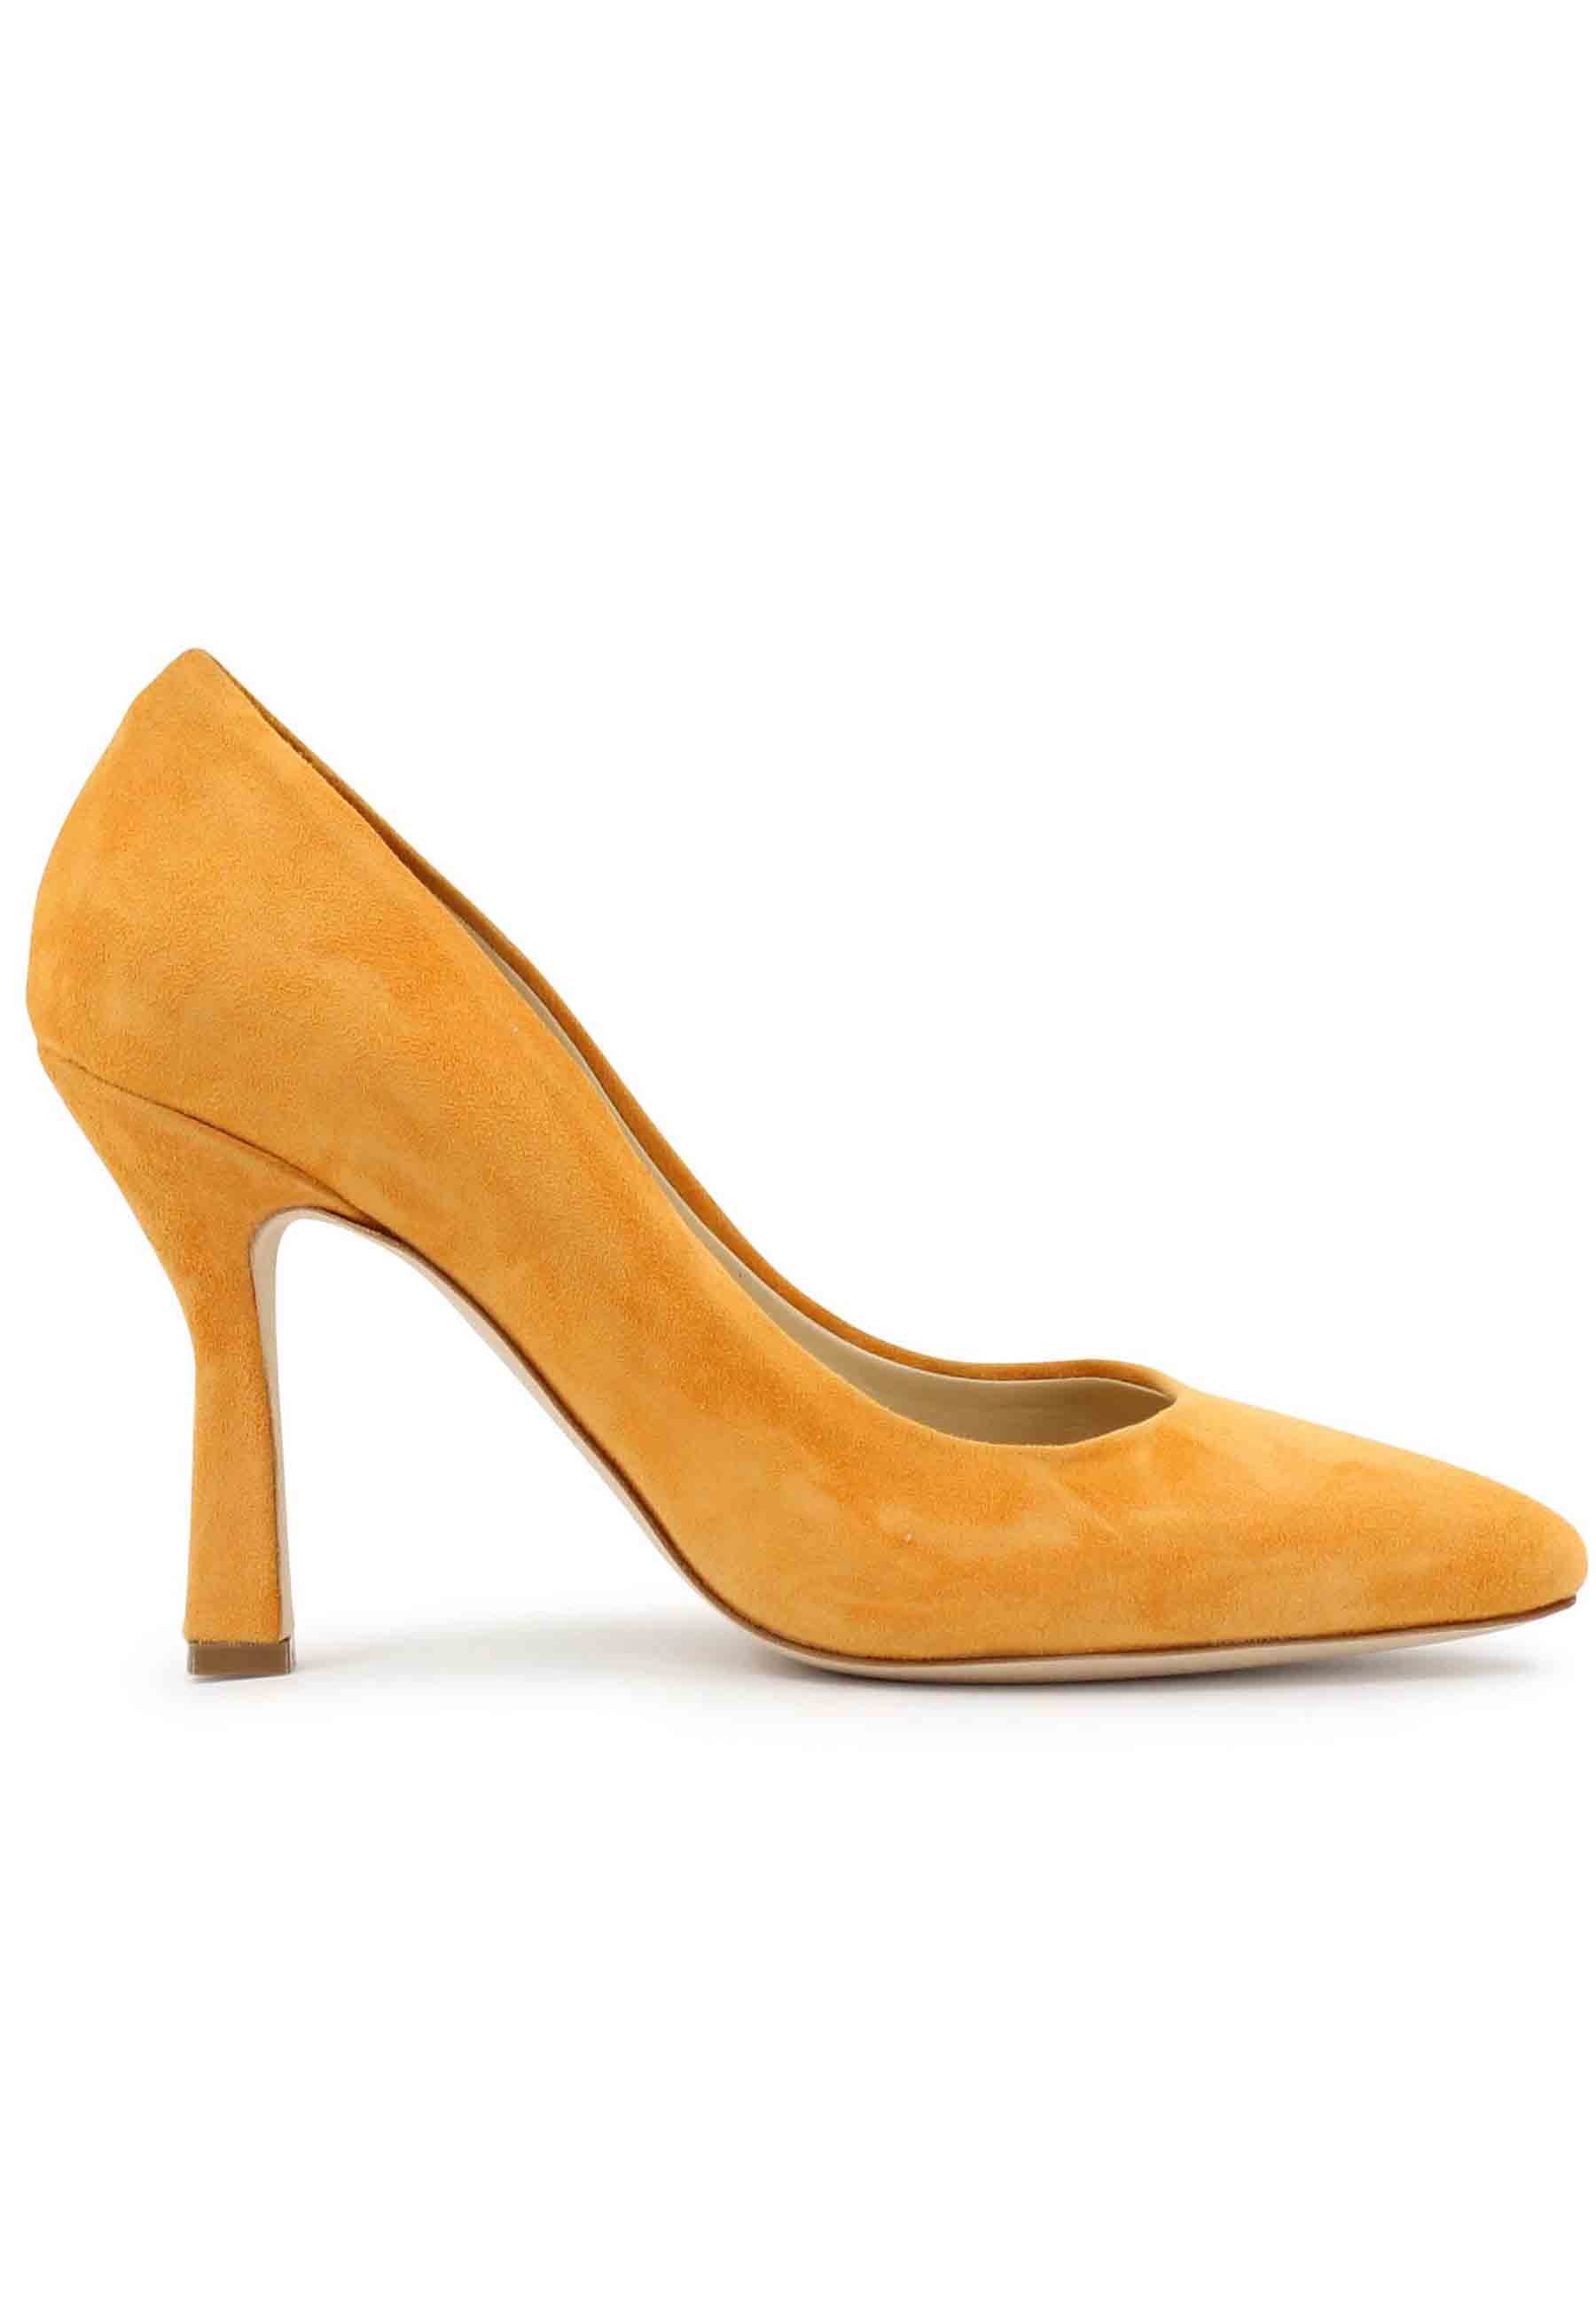 DE1002/RT women's pumps in orange suede with high heel